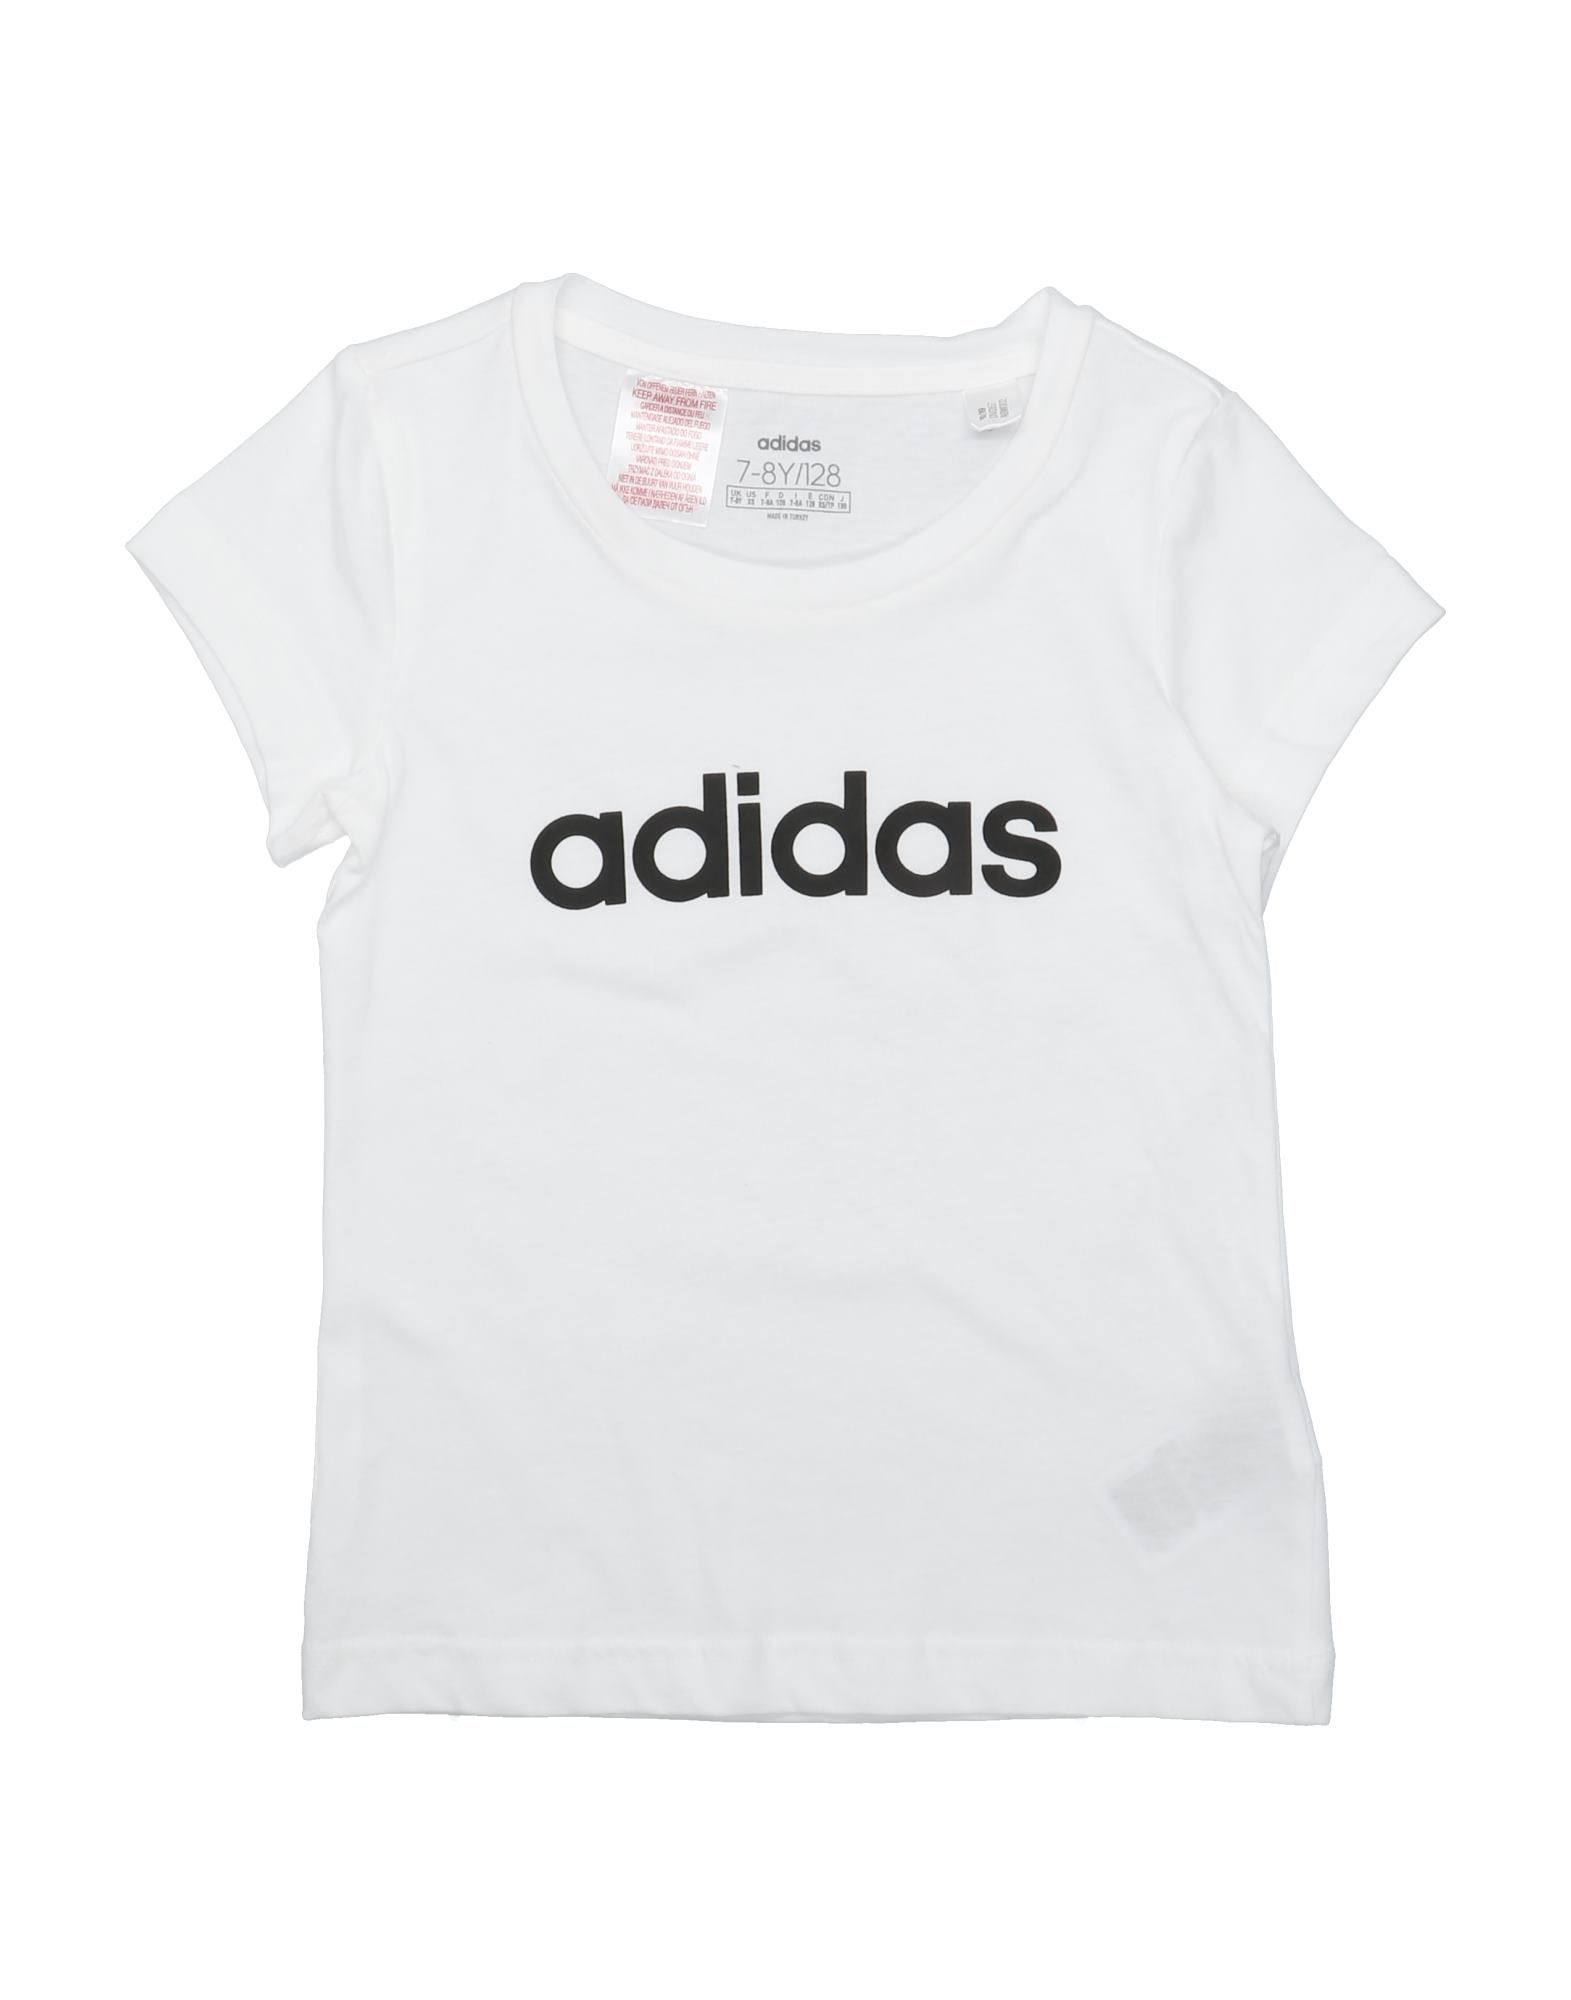 Adidas Originals Kids' T-shirts In White